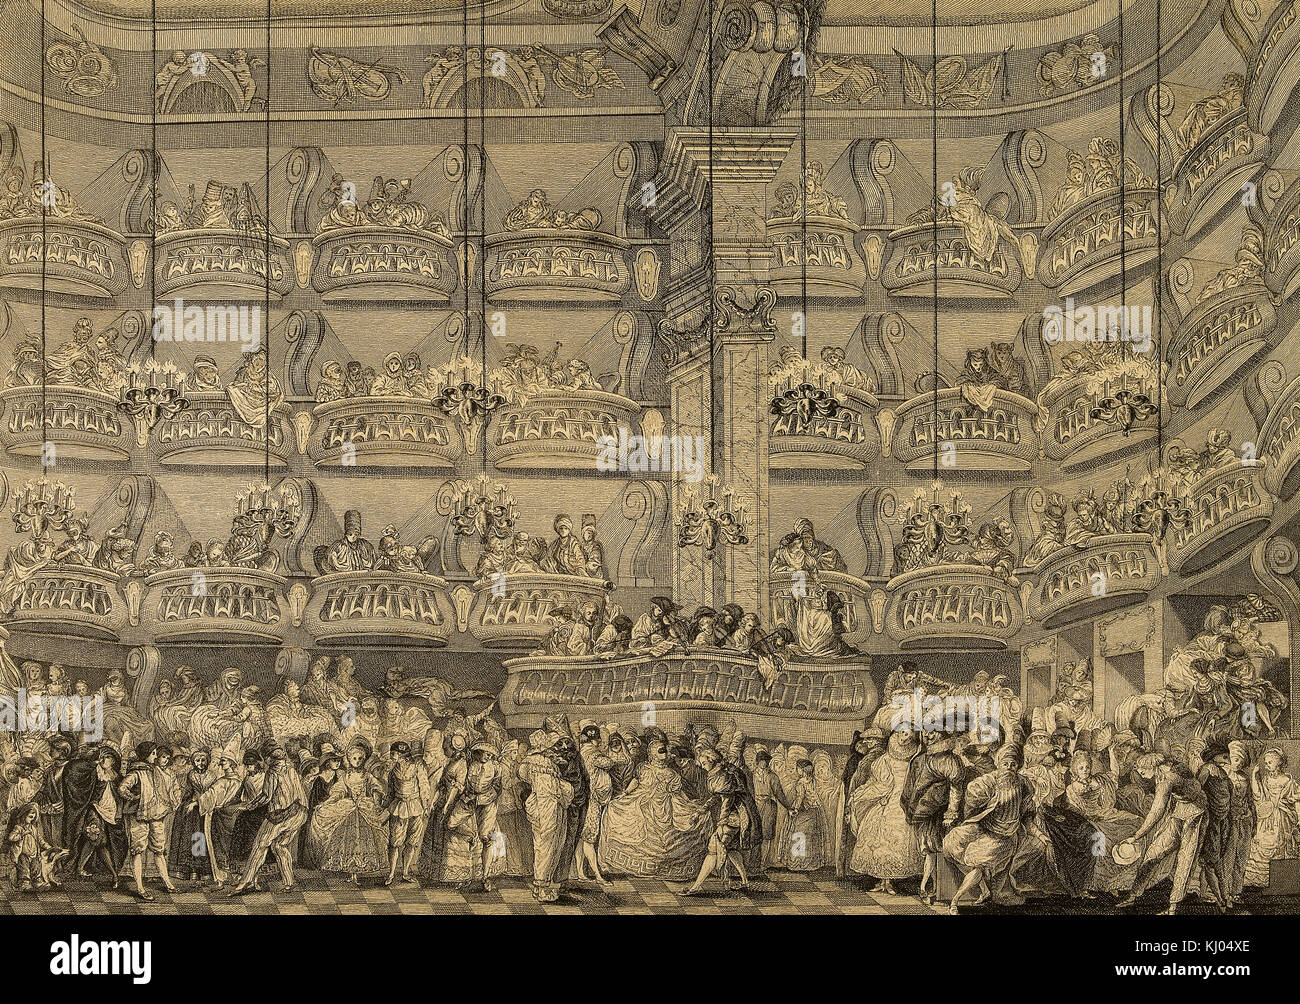 Spain. Madrid. Dance of masks given in the Teatro del Príncipe, 1770. Engraving by Juan Antonio Salvador Carmona y García (1740-1805) before a painting by Luis Paret y Alcazar (1746-1799). Stock Photo